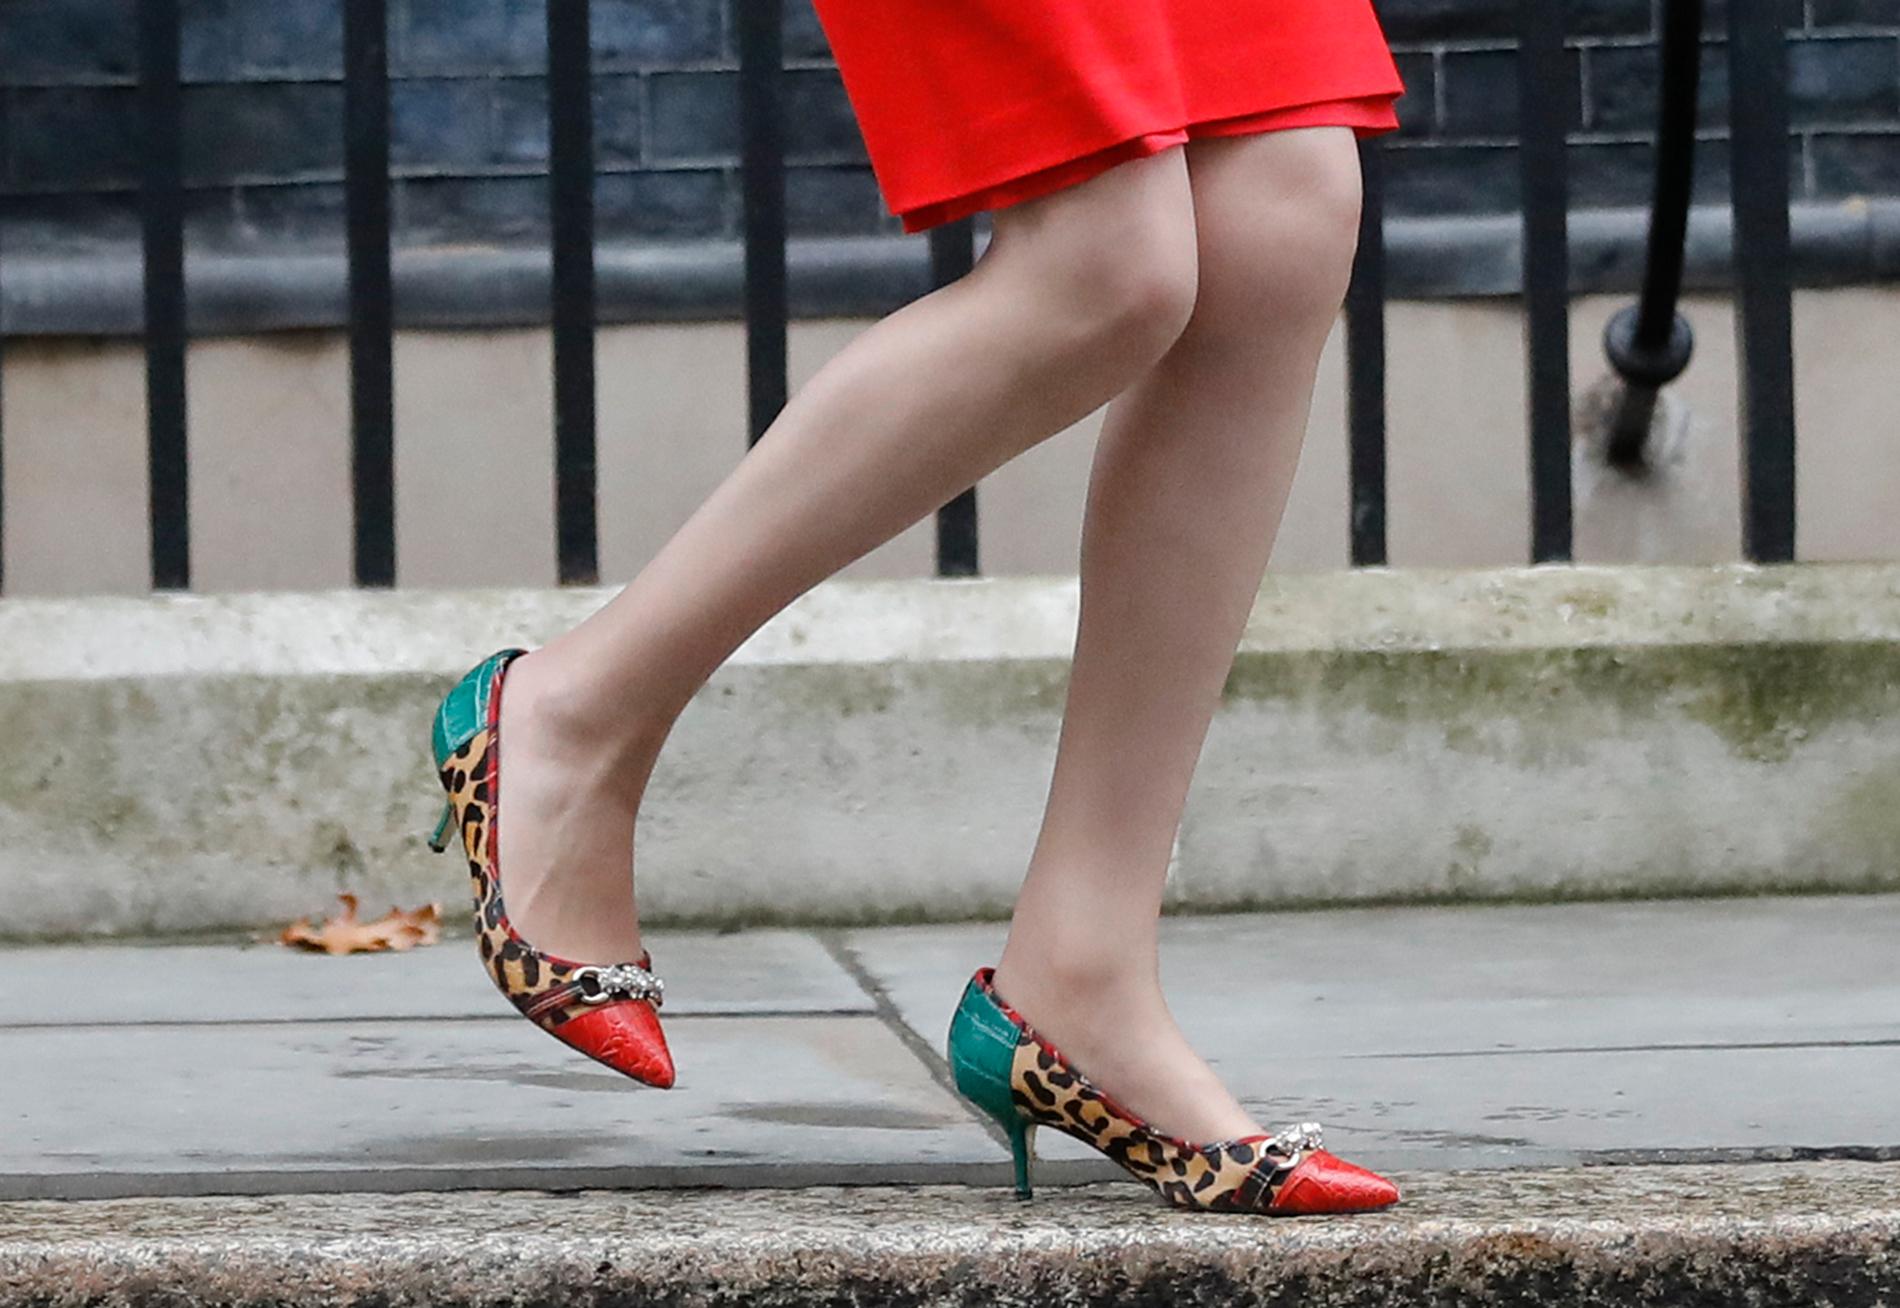 Storbritanniens premiärminister Theresa May är även känd för sin förkärlek för skor.